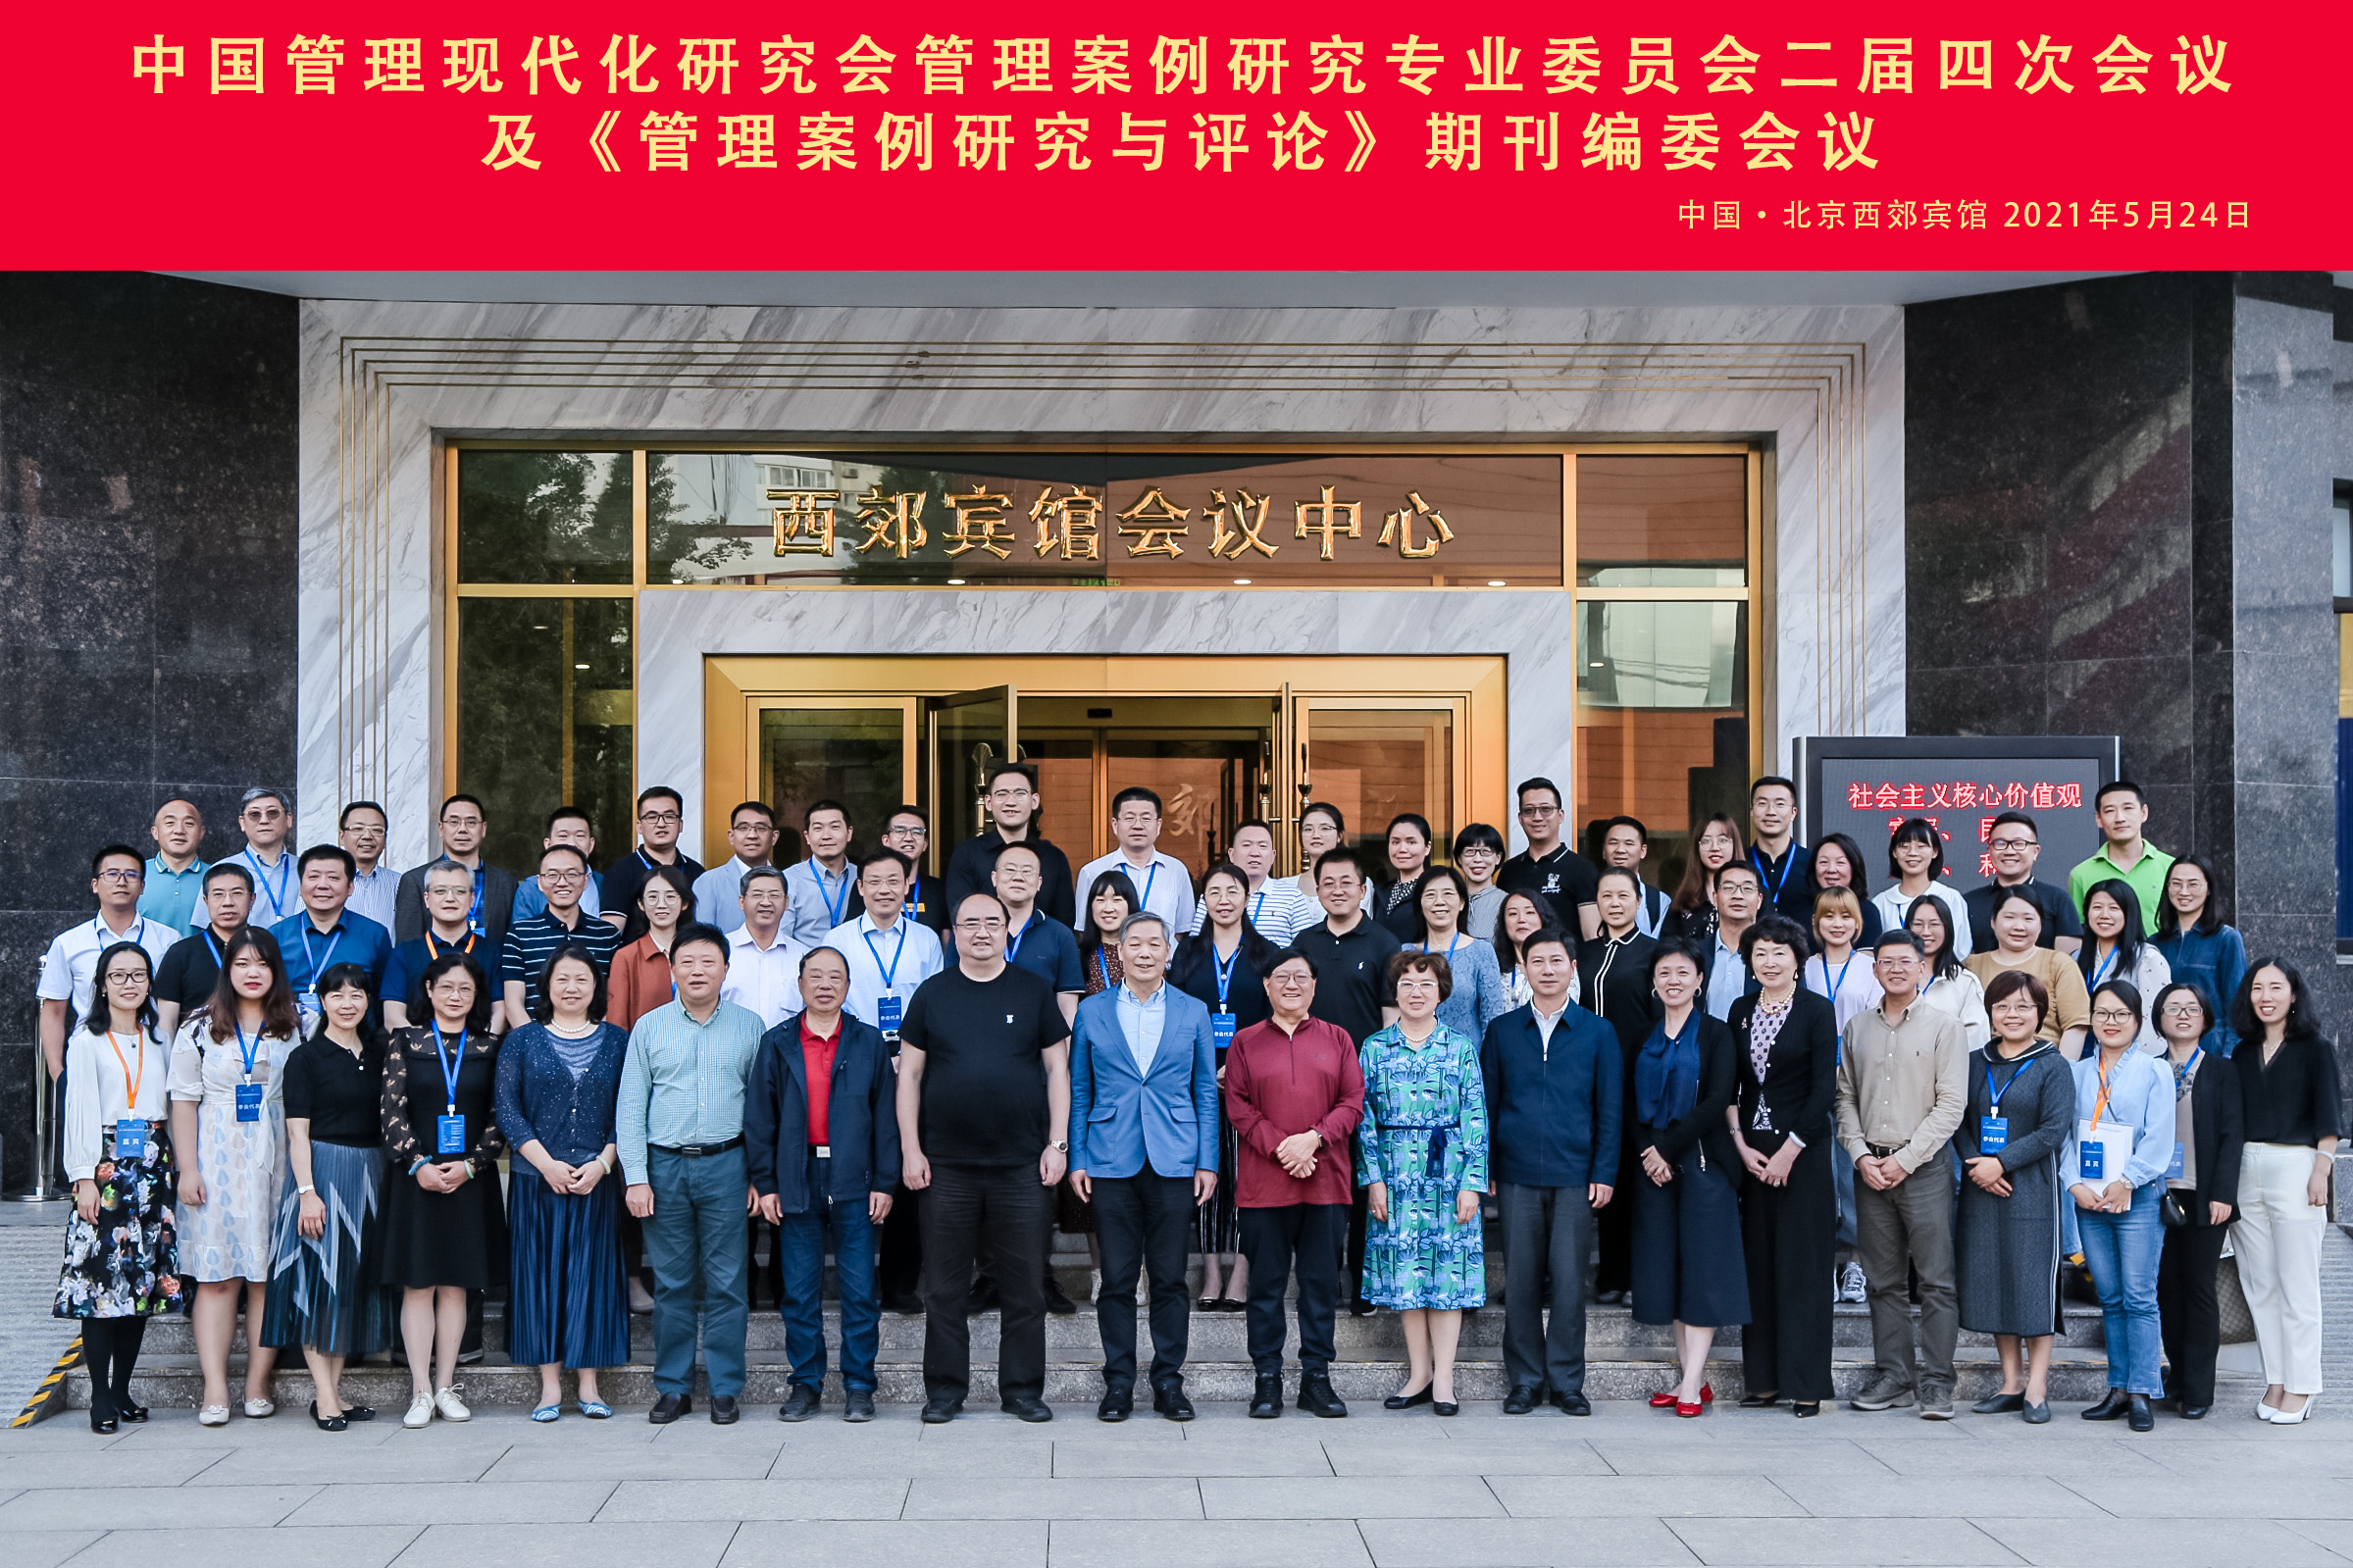 上海大学管理学院于晓宇教授当选《管理案例研究与评论》期刊青年工作委员会主任、荣获2020年度优秀评审专家